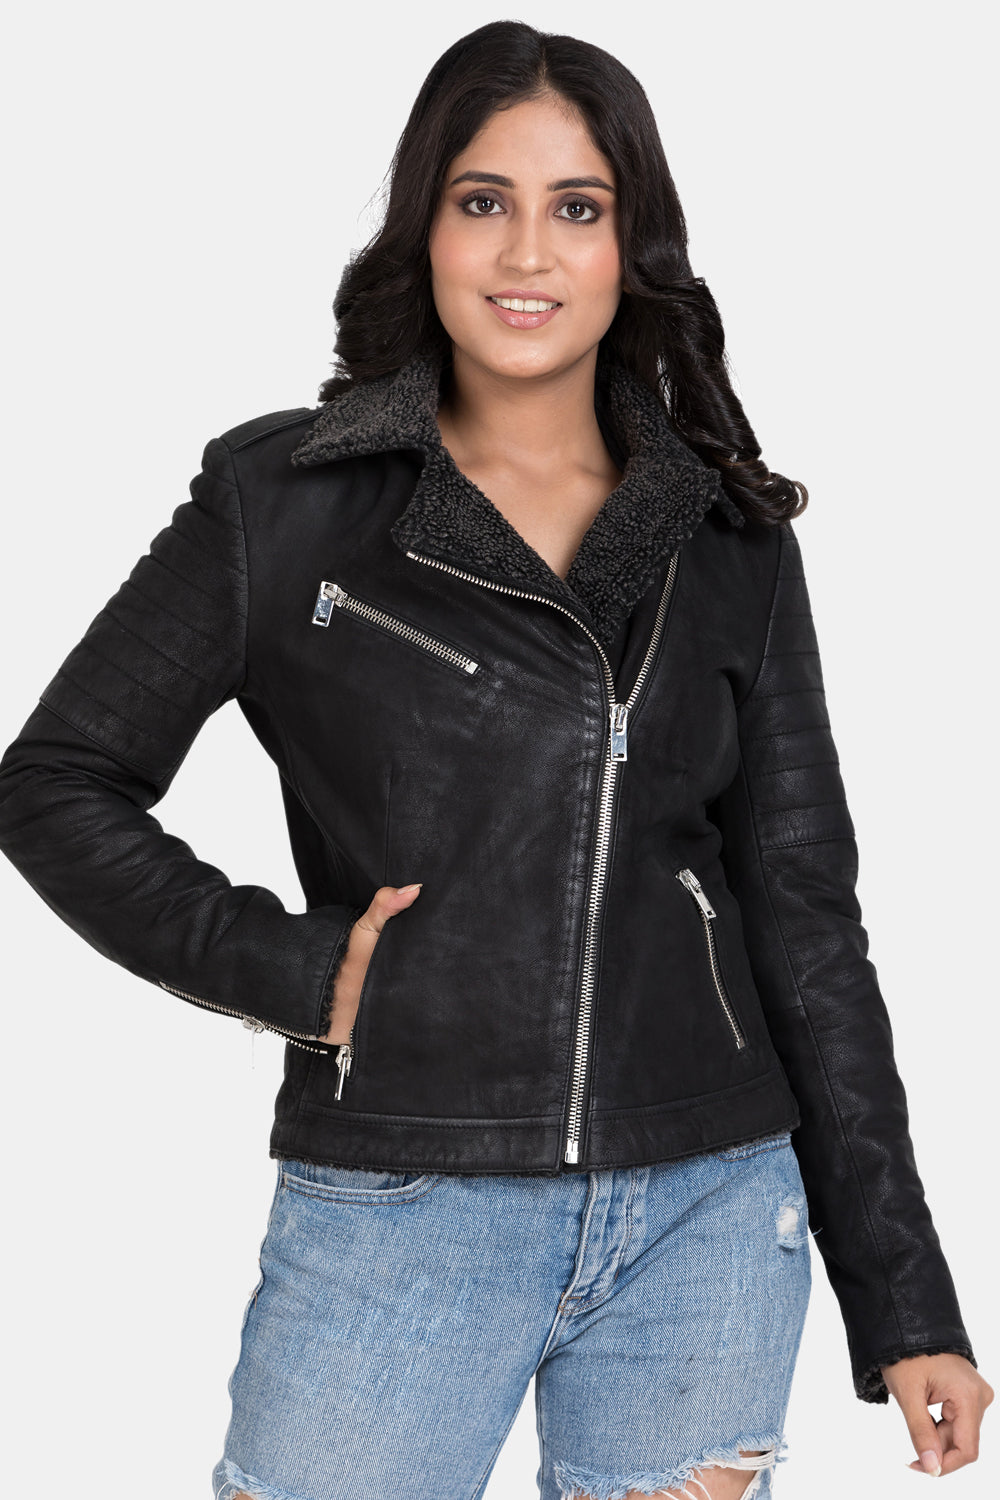 Justanned Fur Biker Leather Jacket